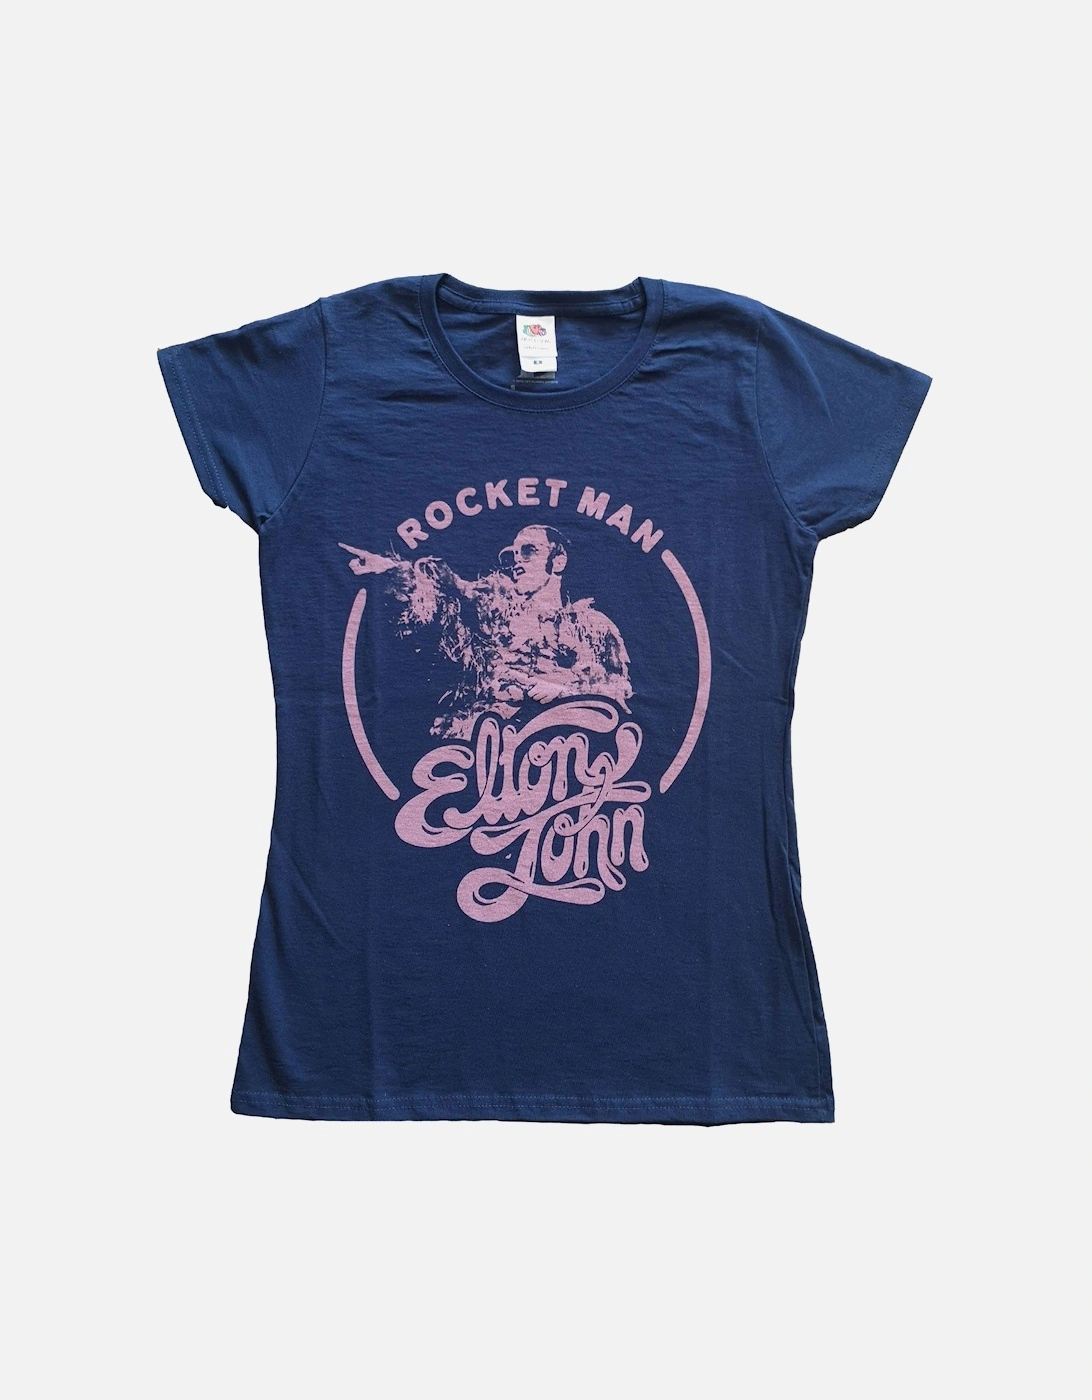 Elton John Womens/Ladies Rocket Man Circle Point T-Shirt, 2 of 1